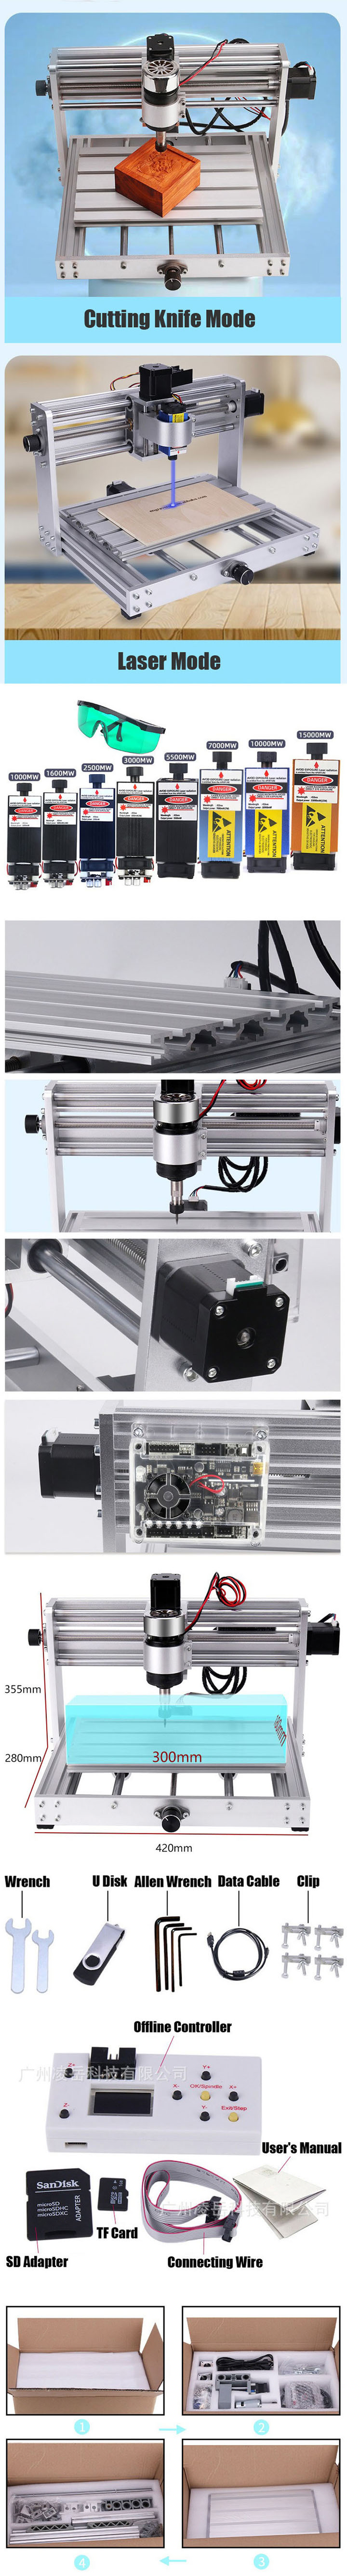 graveur laser CNC